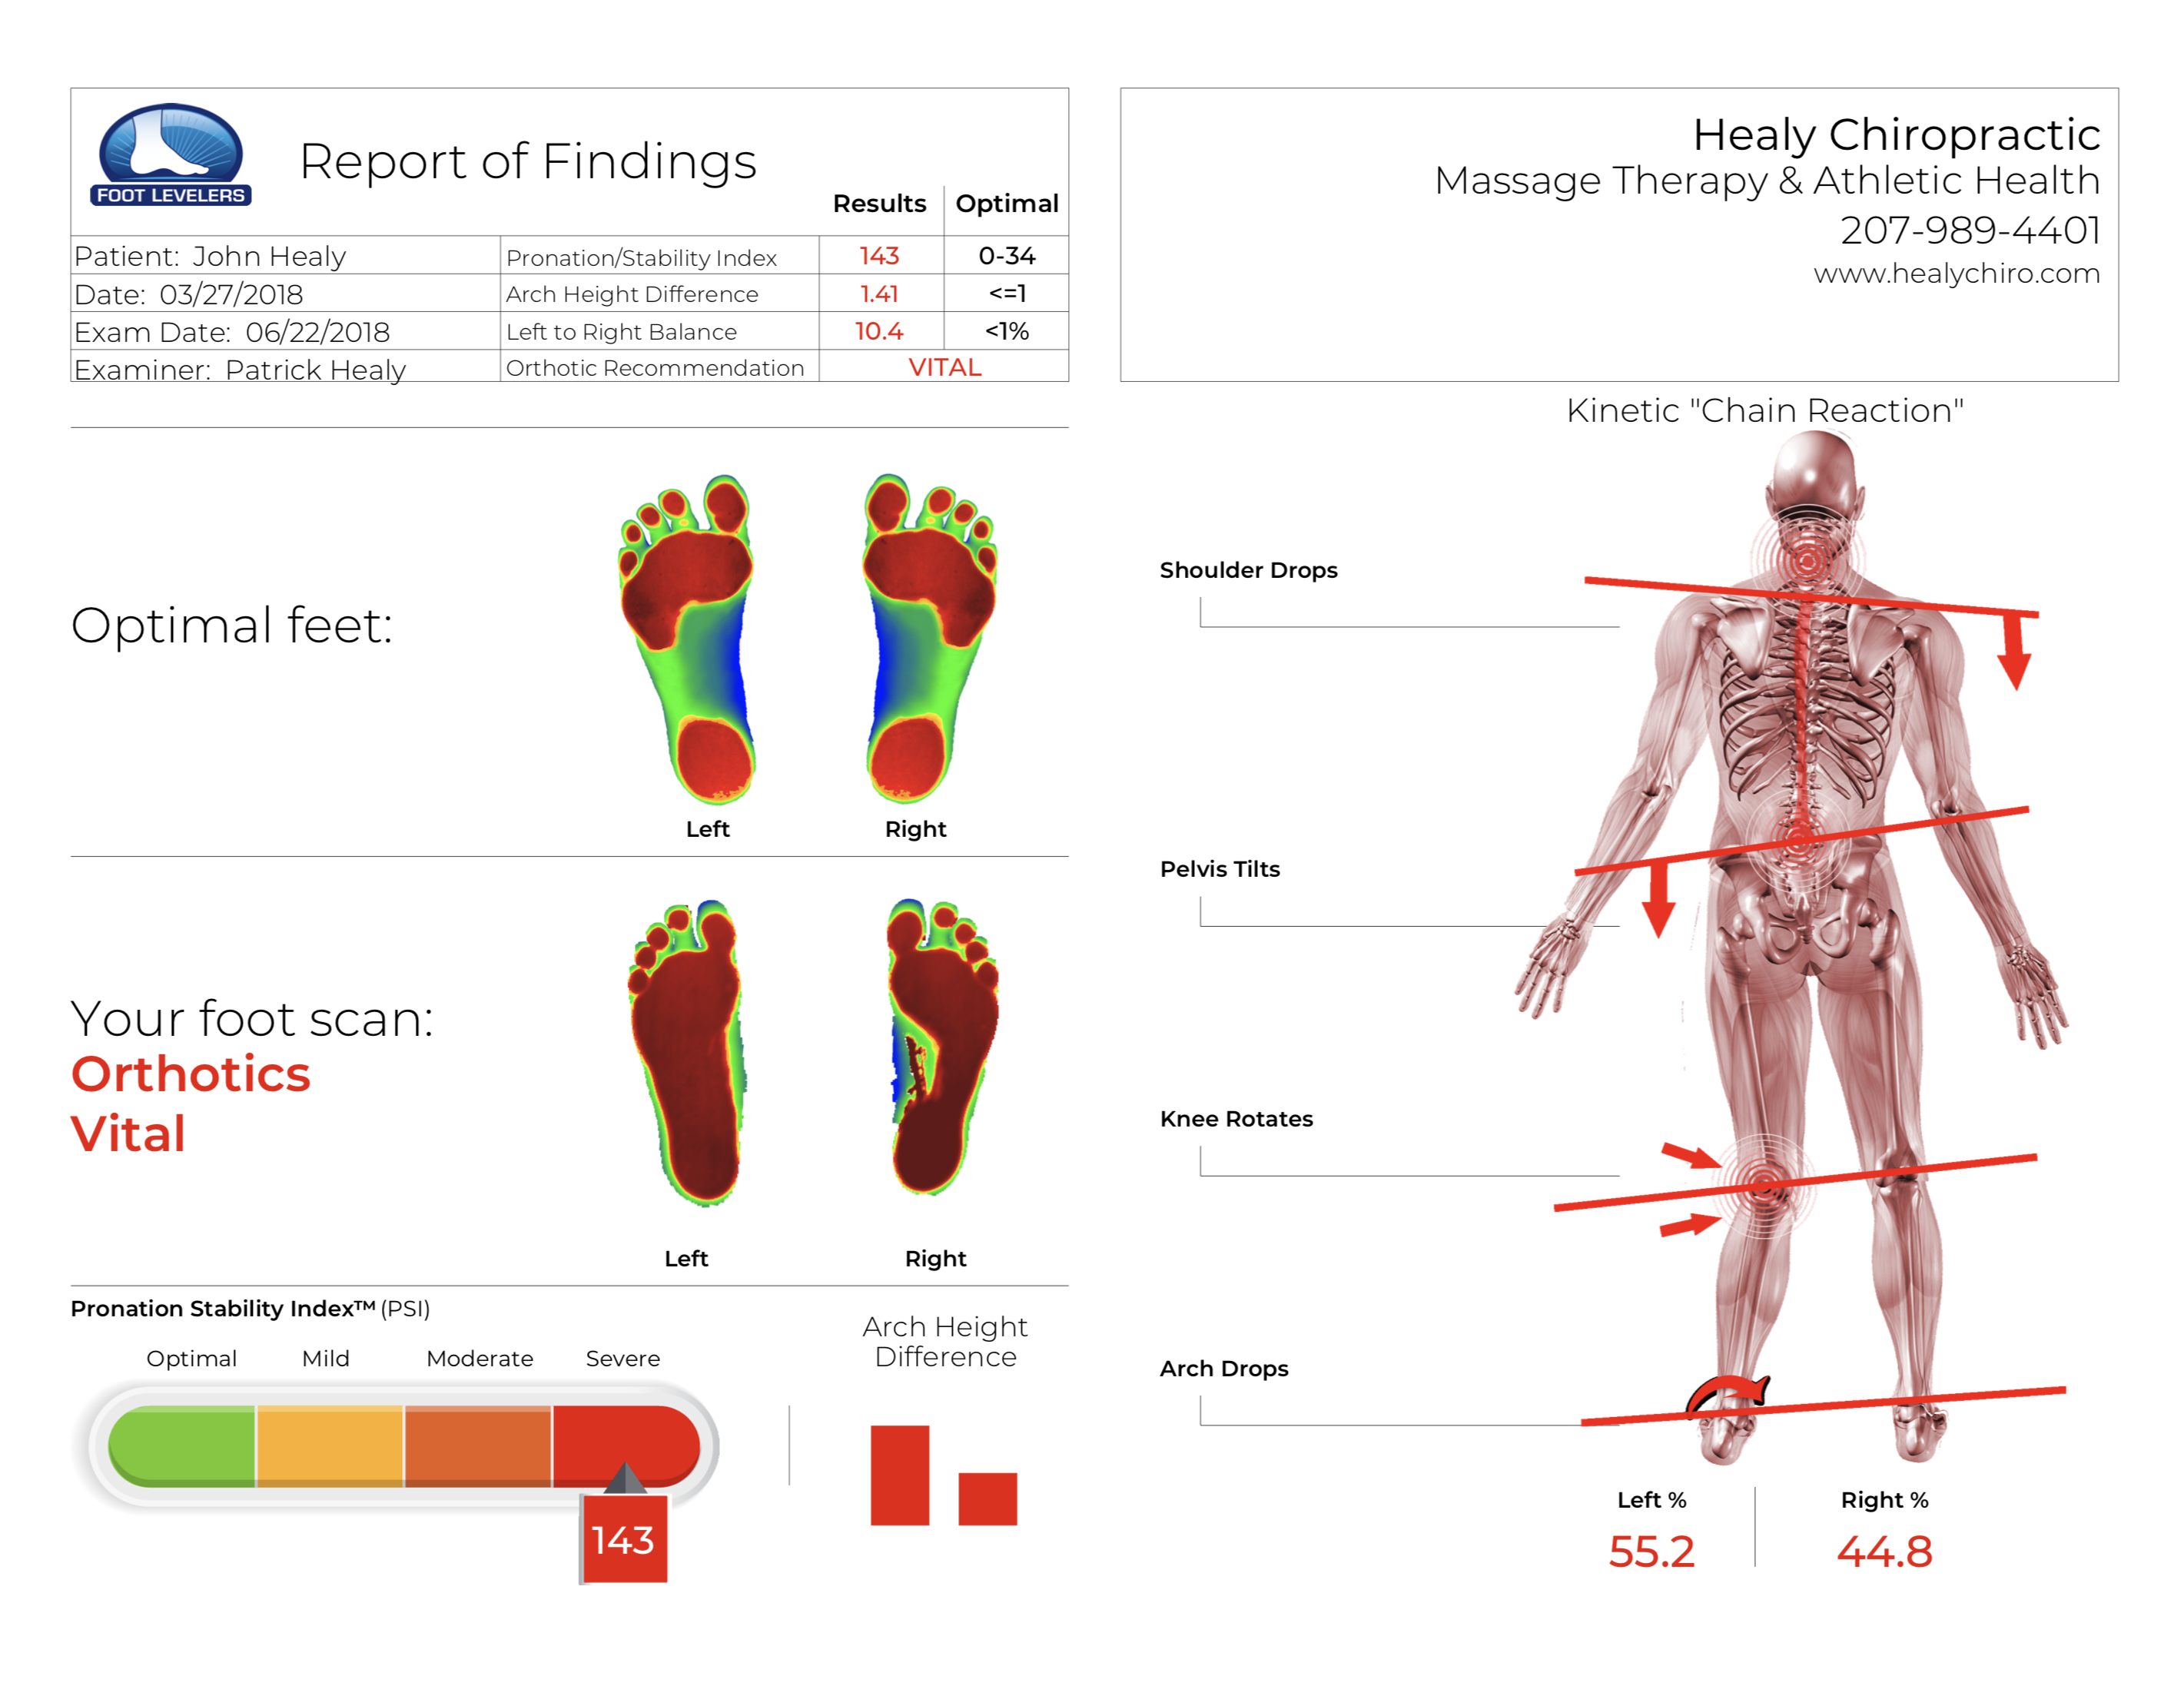 Uneven foot scan flat feet